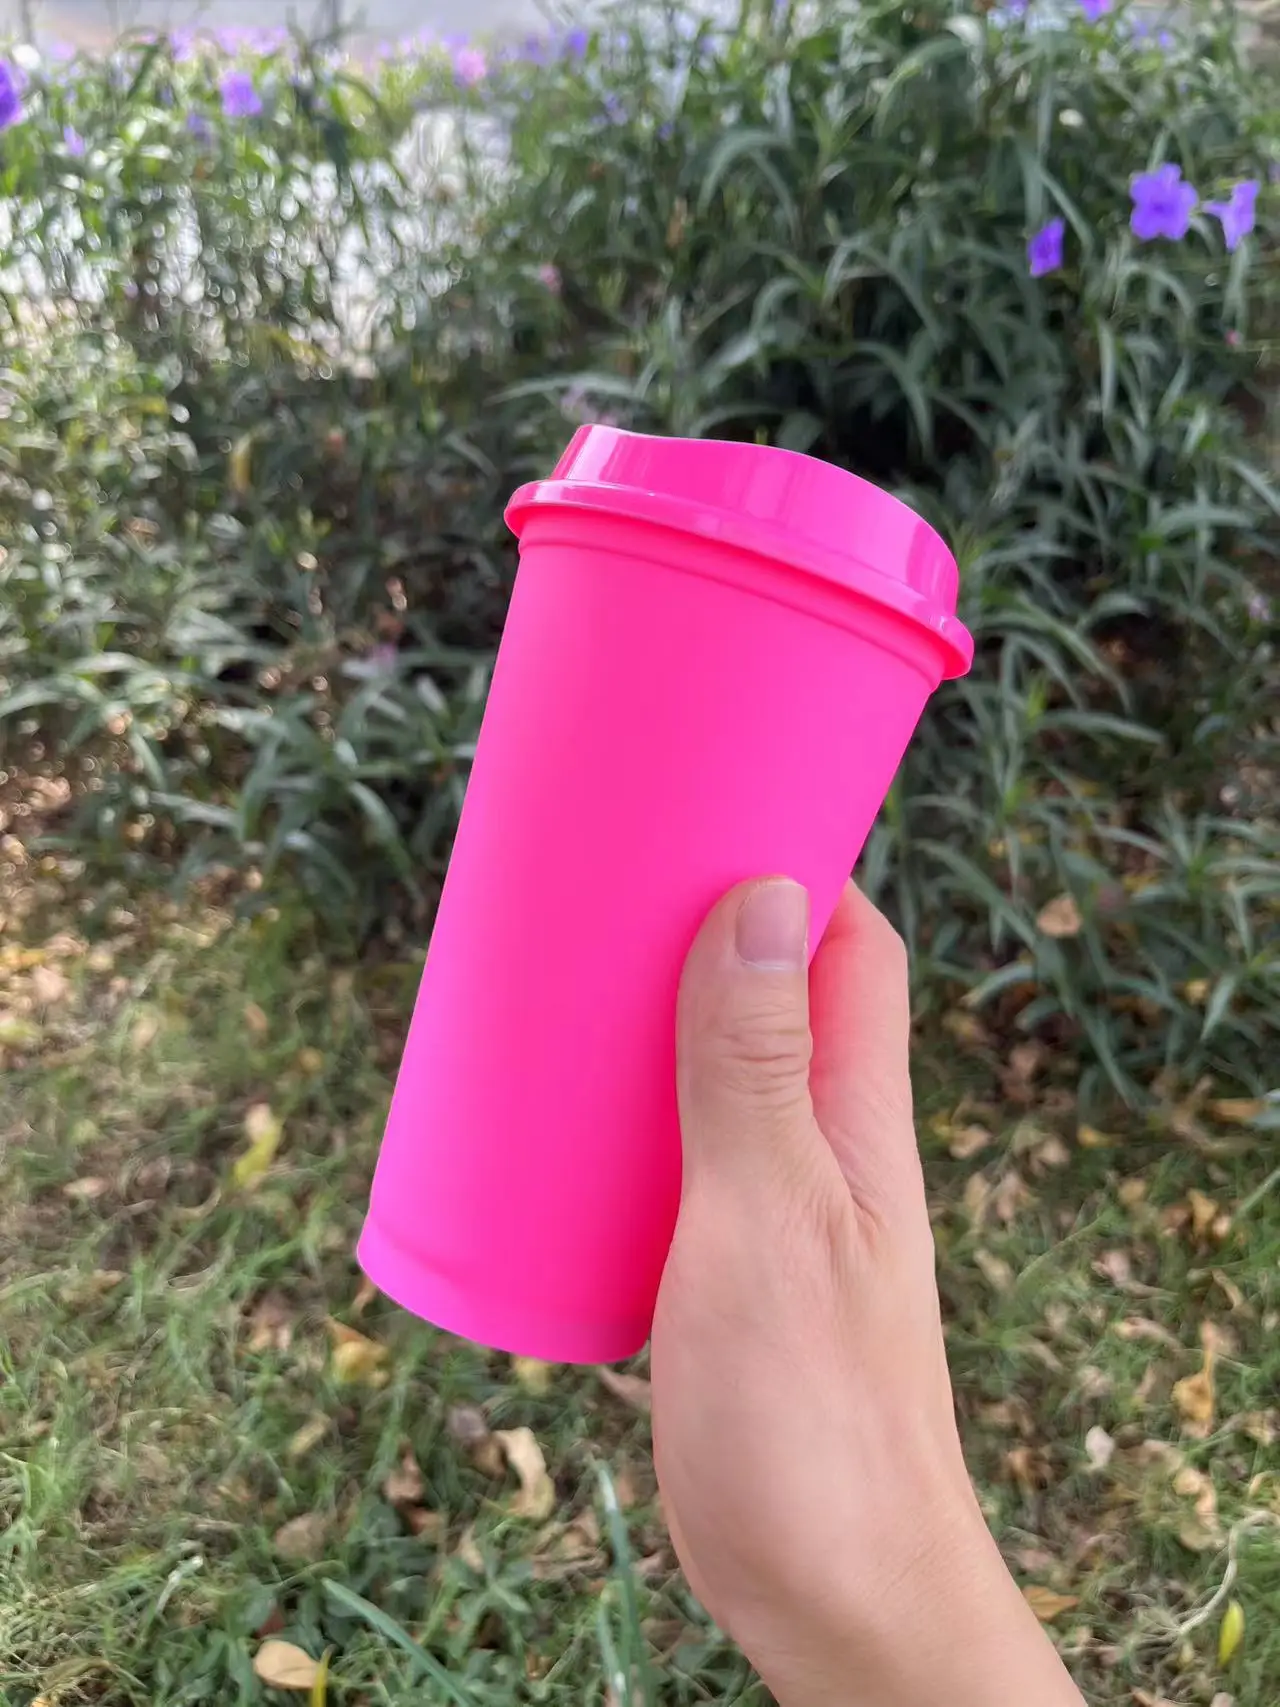 https://ae01.alicdn.com/kf/Sc97bdb3f7a8d4b80a5c102da45f5a27cX/BPA-free-473ml-480ml-500ml-16oz-blank-plain-reusable-plastic-coffee-cup-travel-coffee-mug-hot.jpg